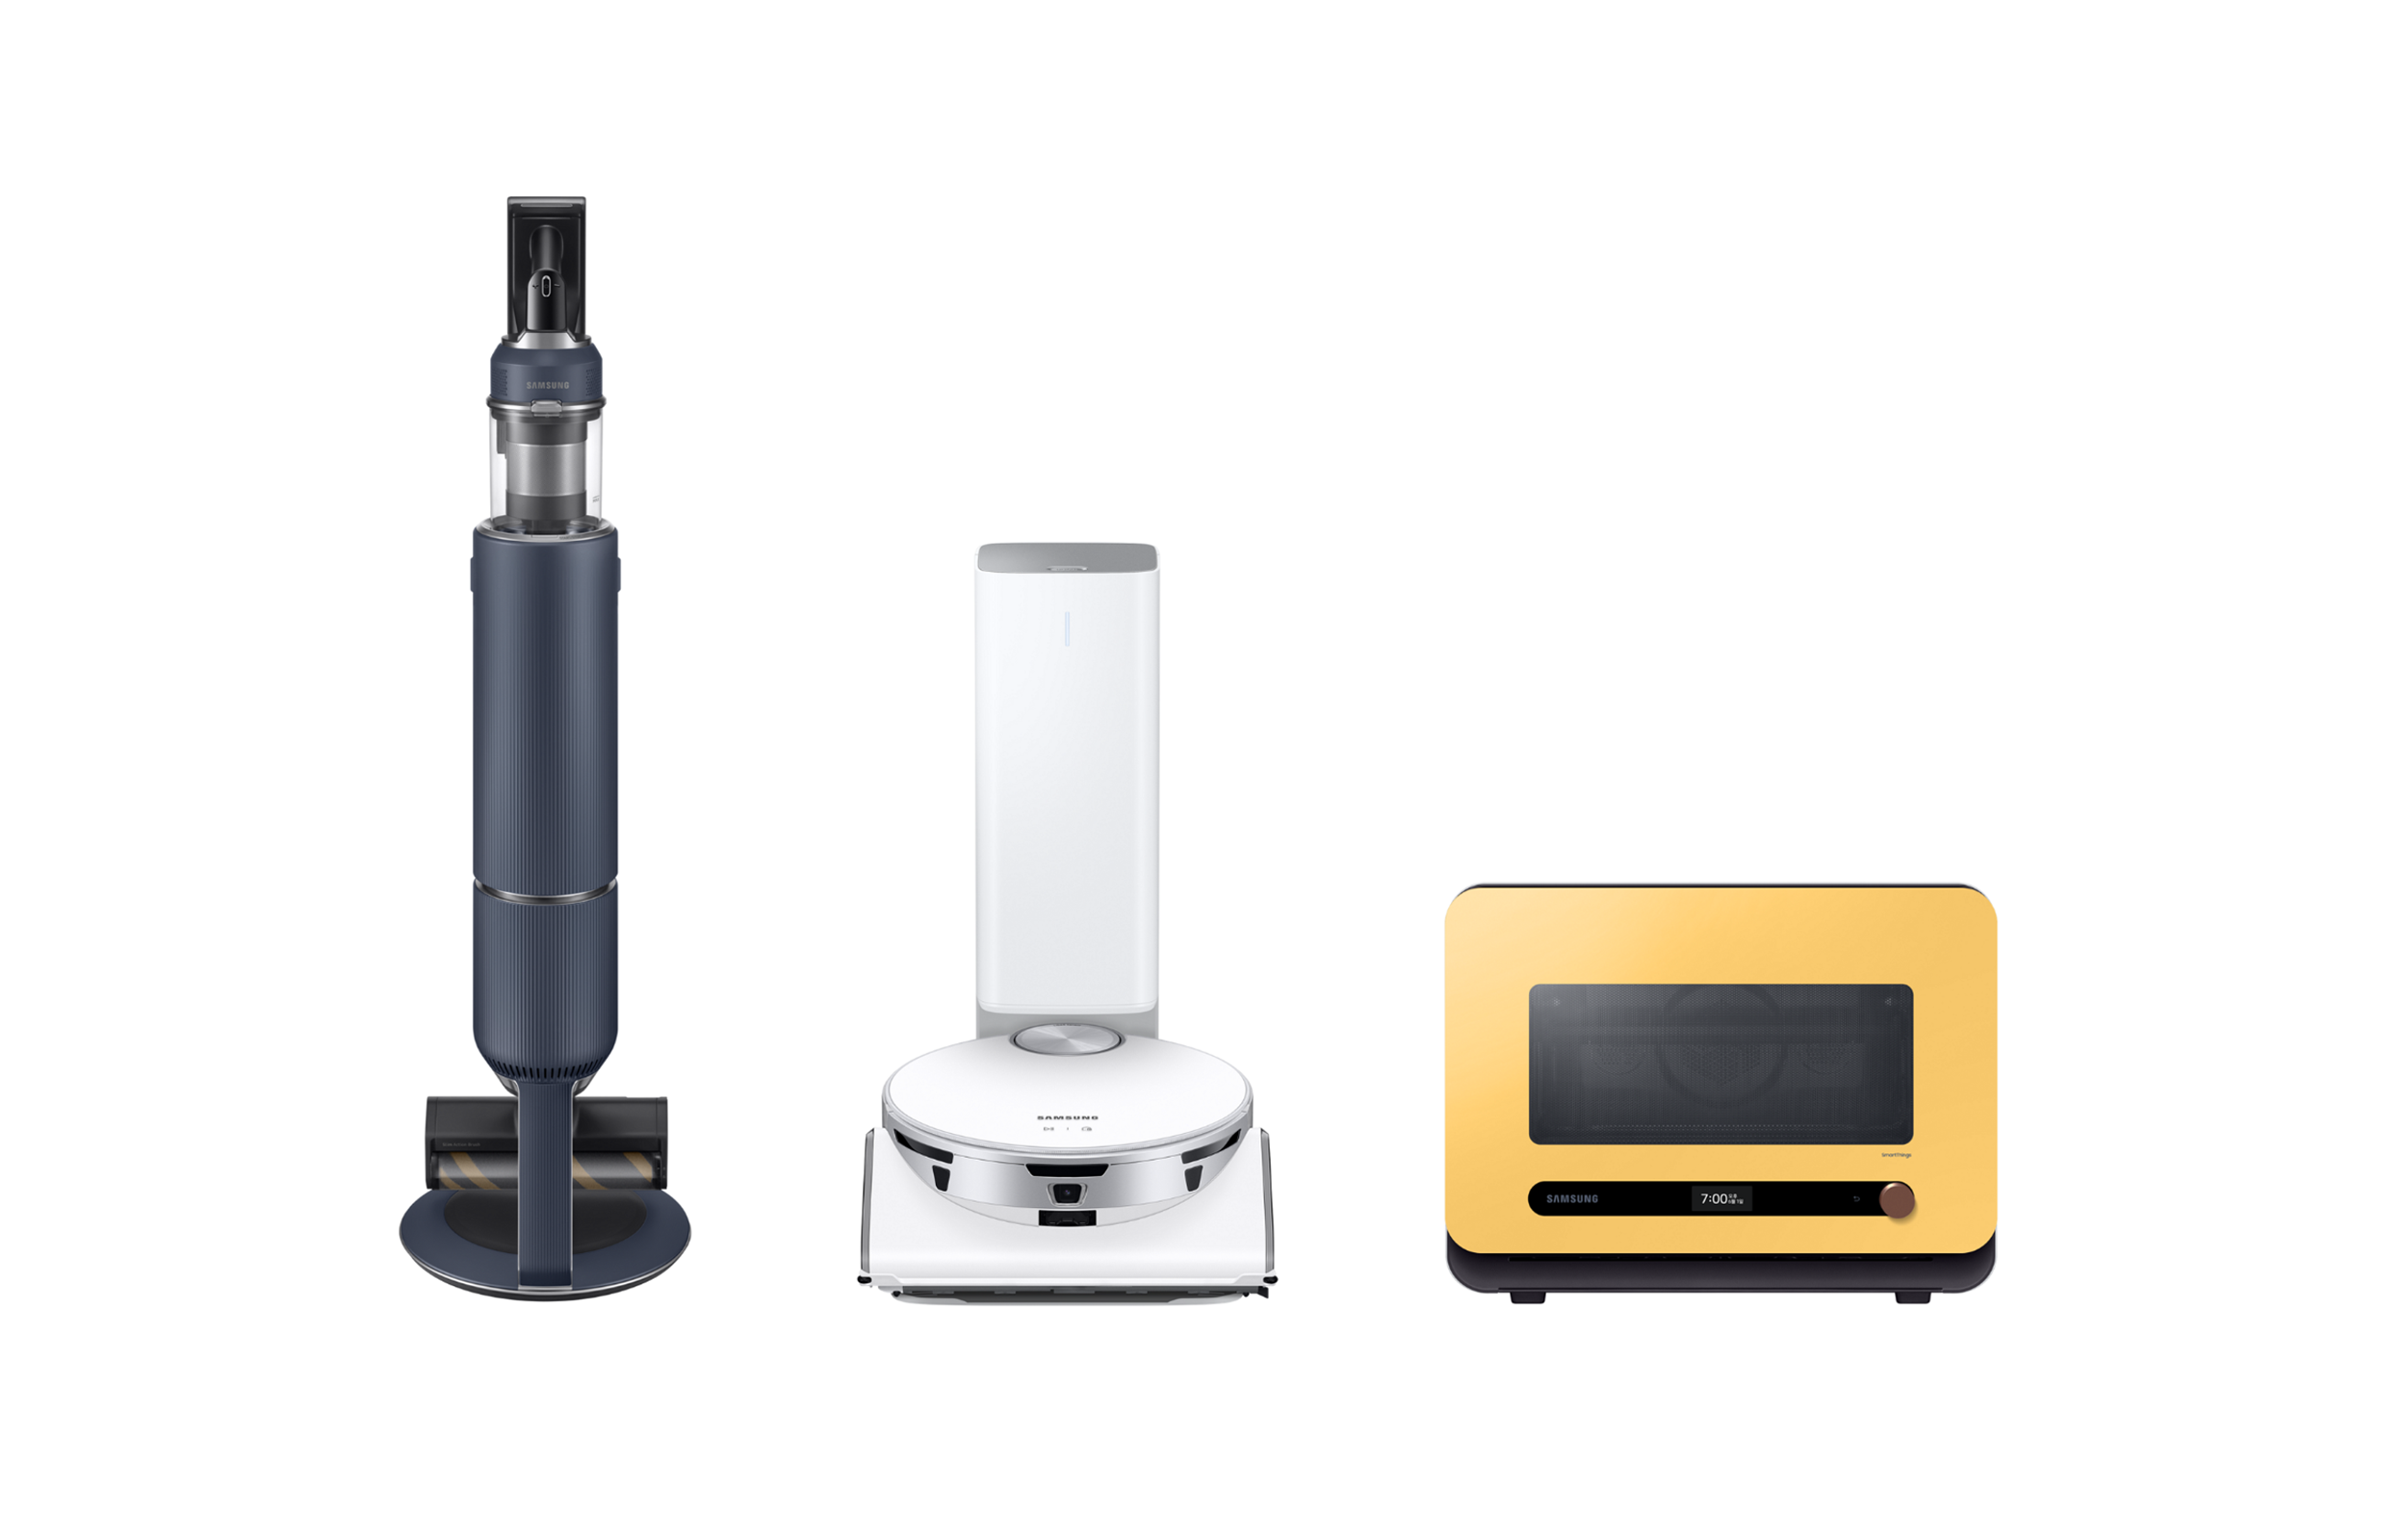 인간공학디자인상을 받은 삼성전자 비스포크 가전 3종. 왼쪽부터 비스포크 제트, 비스포크 제트봇 AI, 비스포크 큐커. 삼성전자 제공.